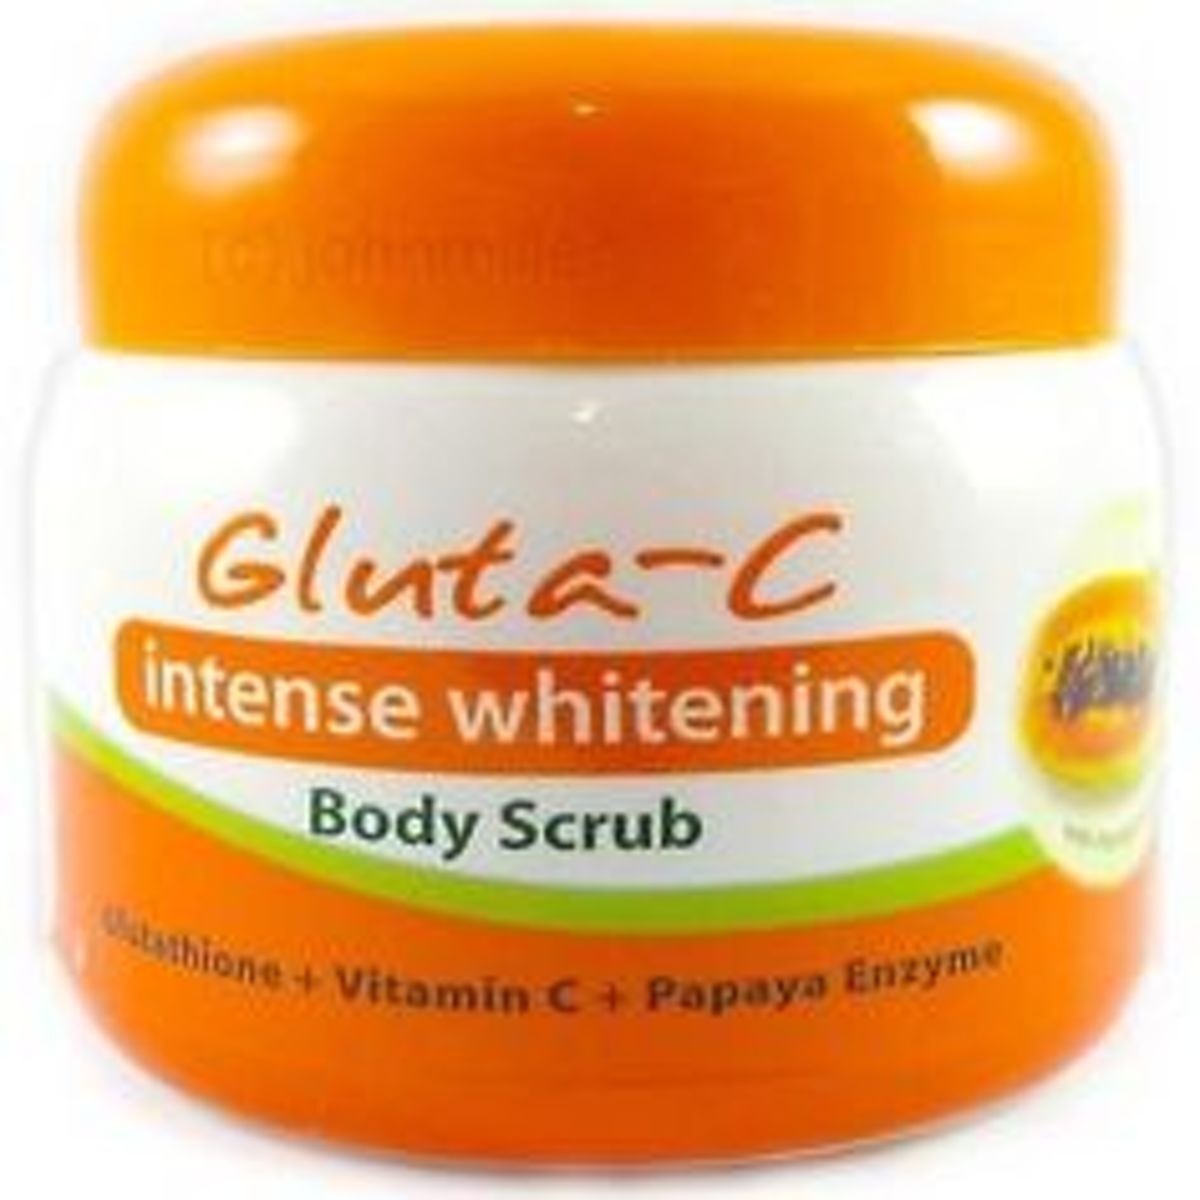 Gluta-c Intense Whitening Body Scrub